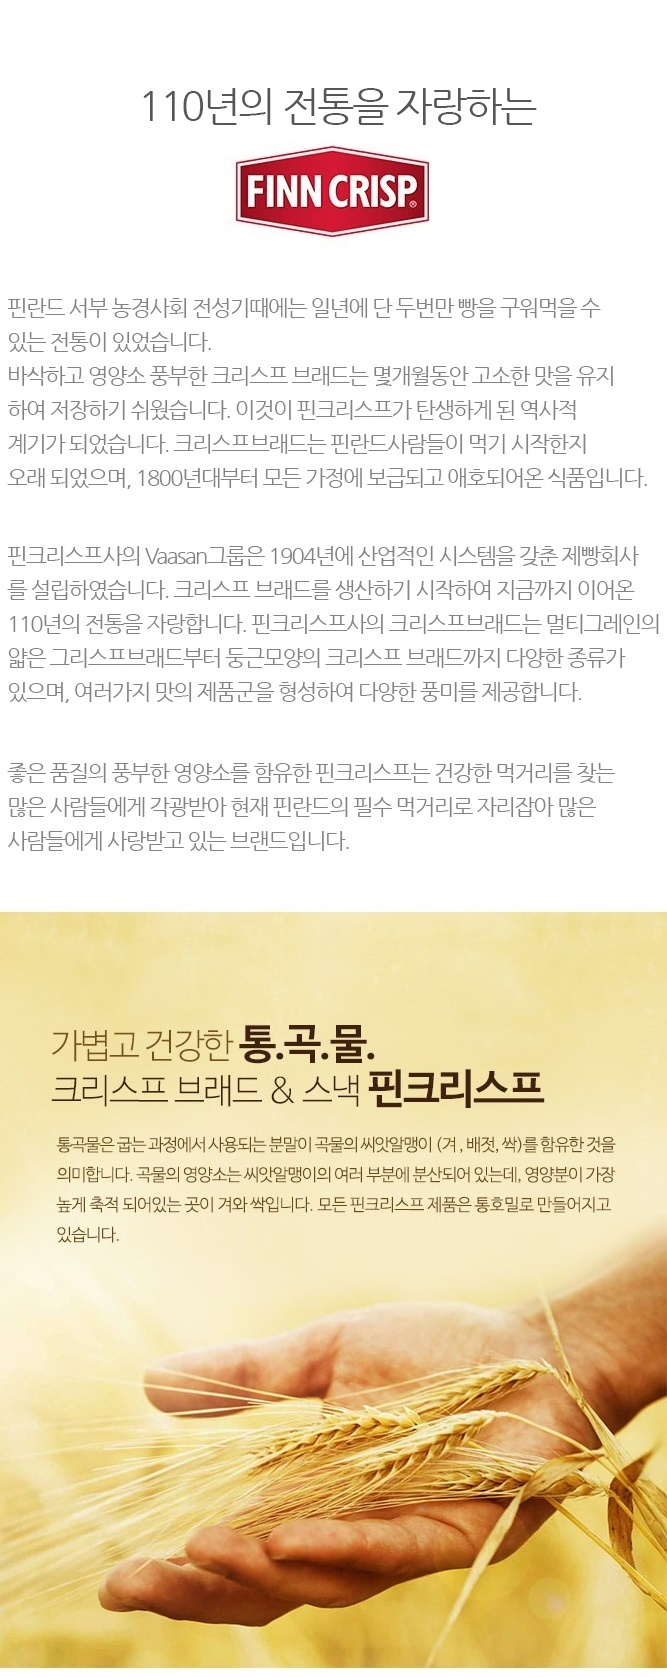 핀크리스프 씬브래드 코리앤더 체험단 모집 (11.02~11.14)